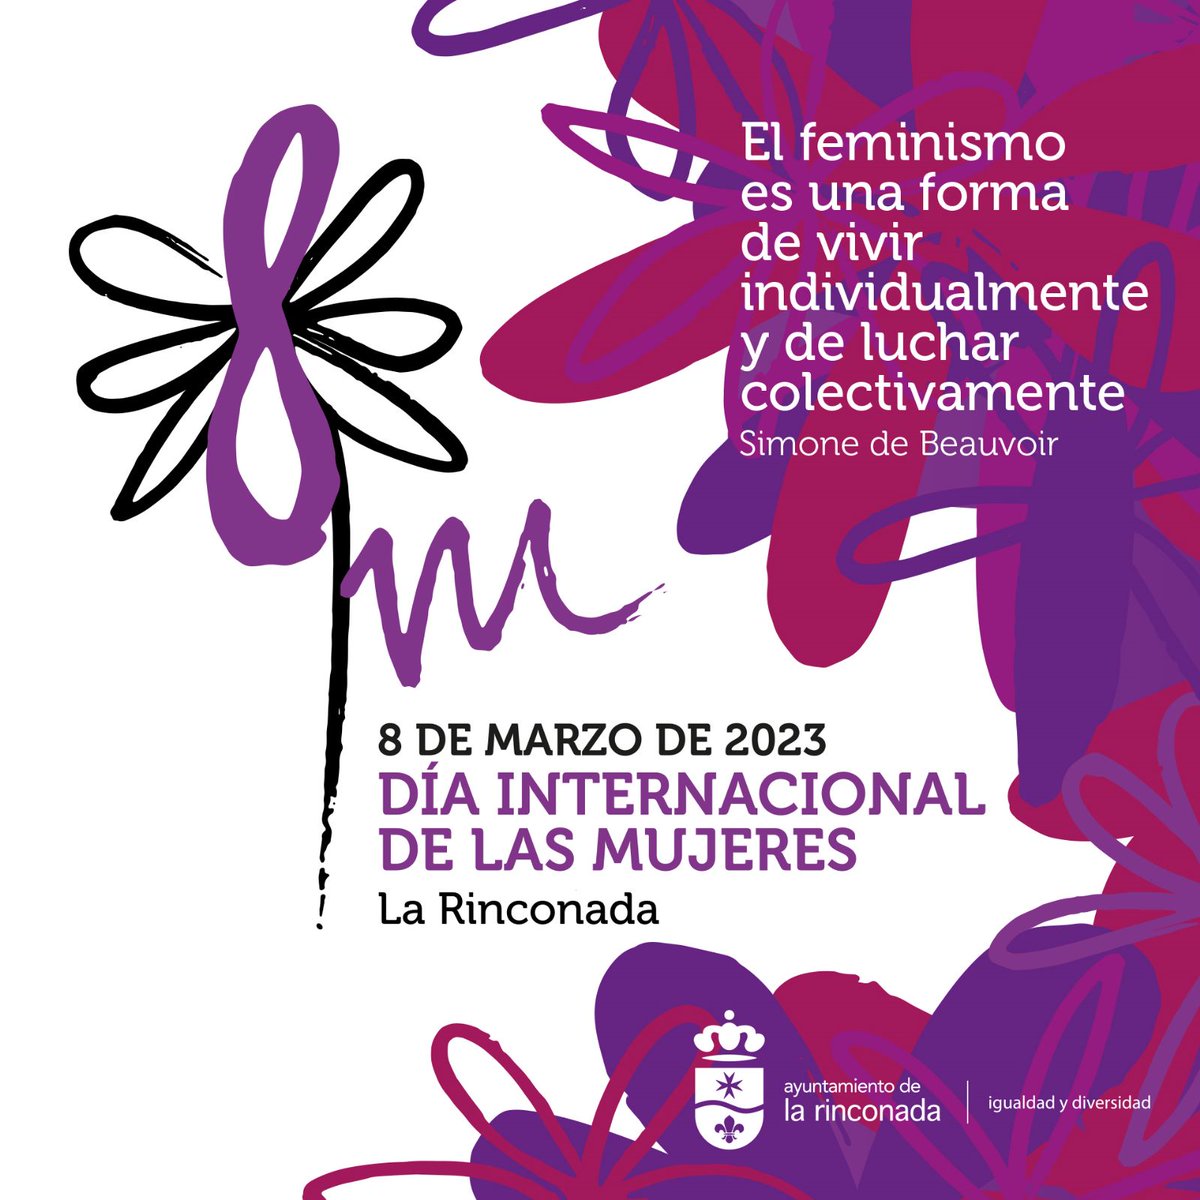 #8deMarzo #DíaInternacionalDeLasMujeres #LaRinconada #Igualdad #CentroMunicipaldeInformaciónalaMujer #feminismoparavivir